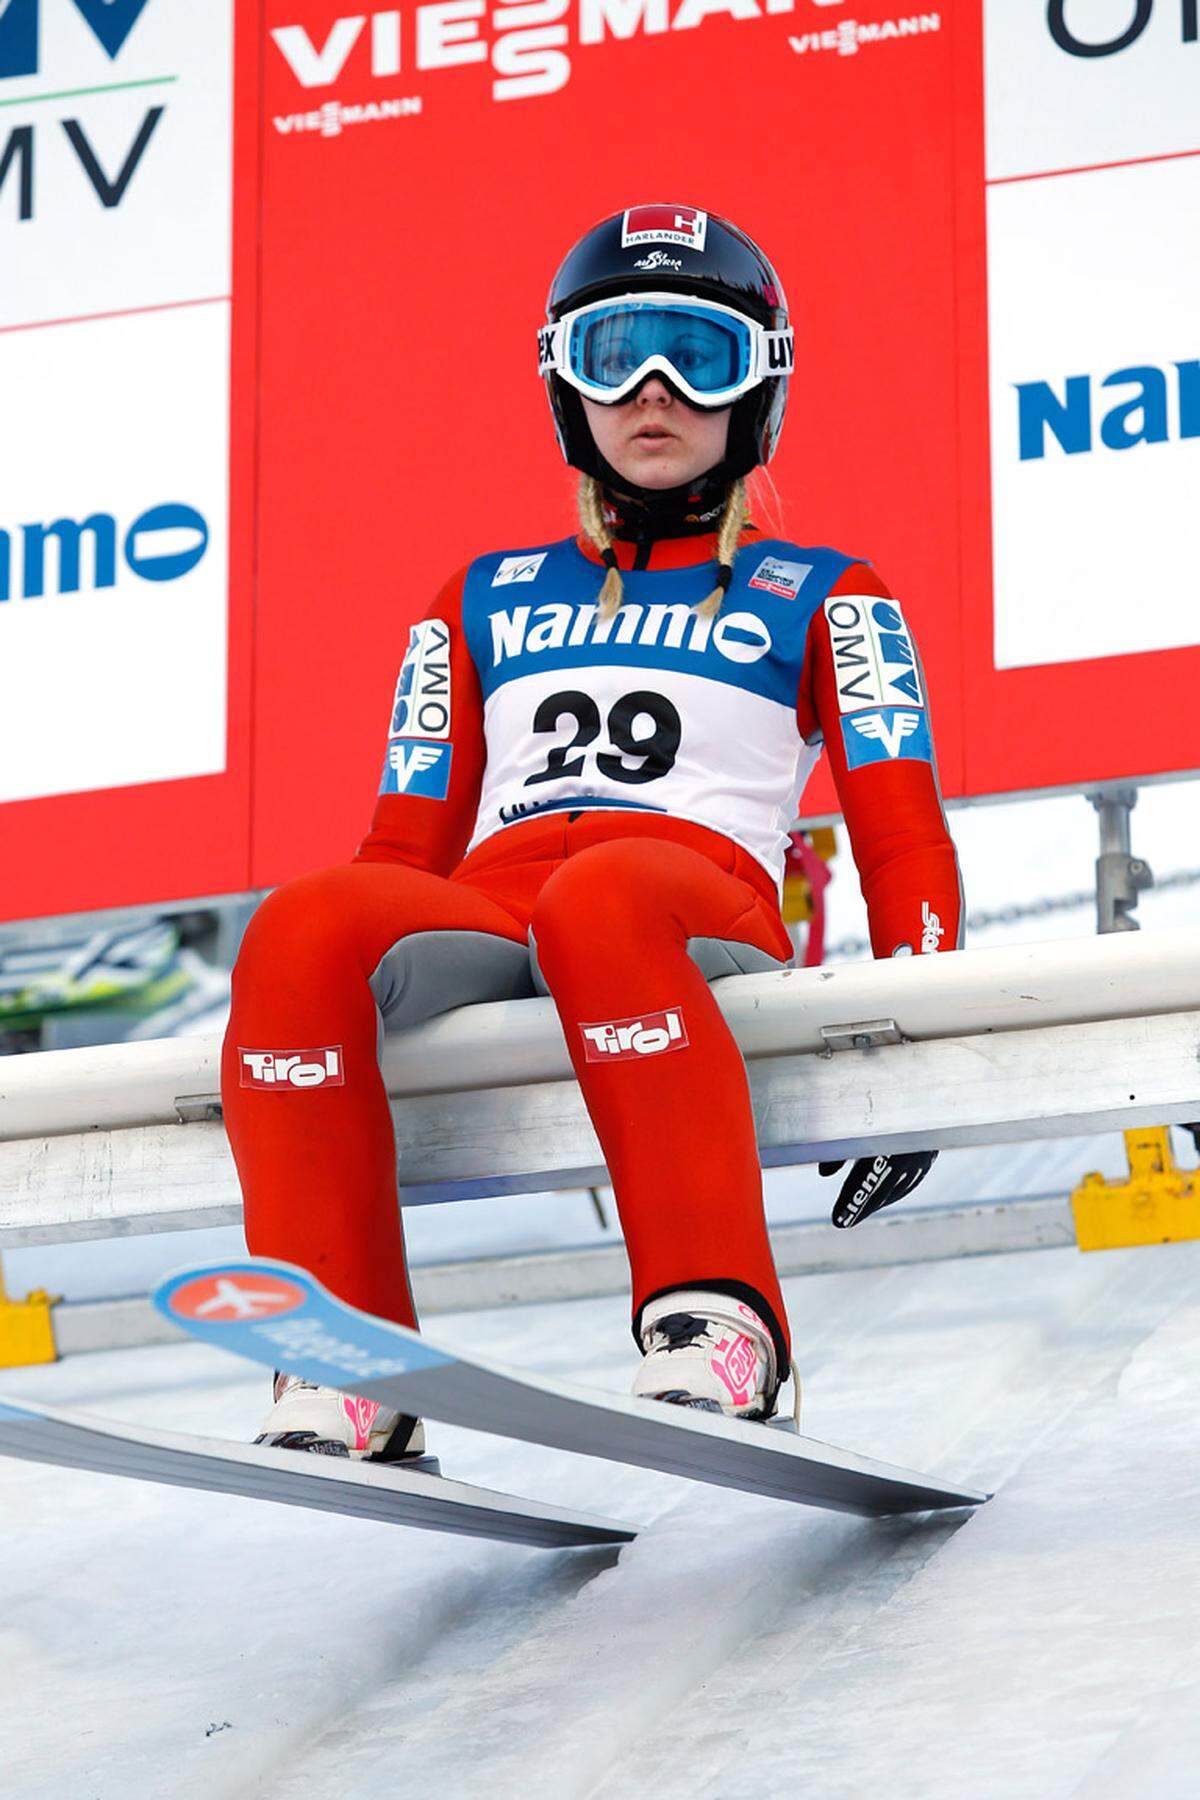 Nicht einmal die Hälfte davon wiegt Skispringerin Chiara Hölzl. Mit 43 Kilogramm ist sie die leichteste und mit einer Körpergröße von 1,52 Metern auch die kleinste aller Athleten.